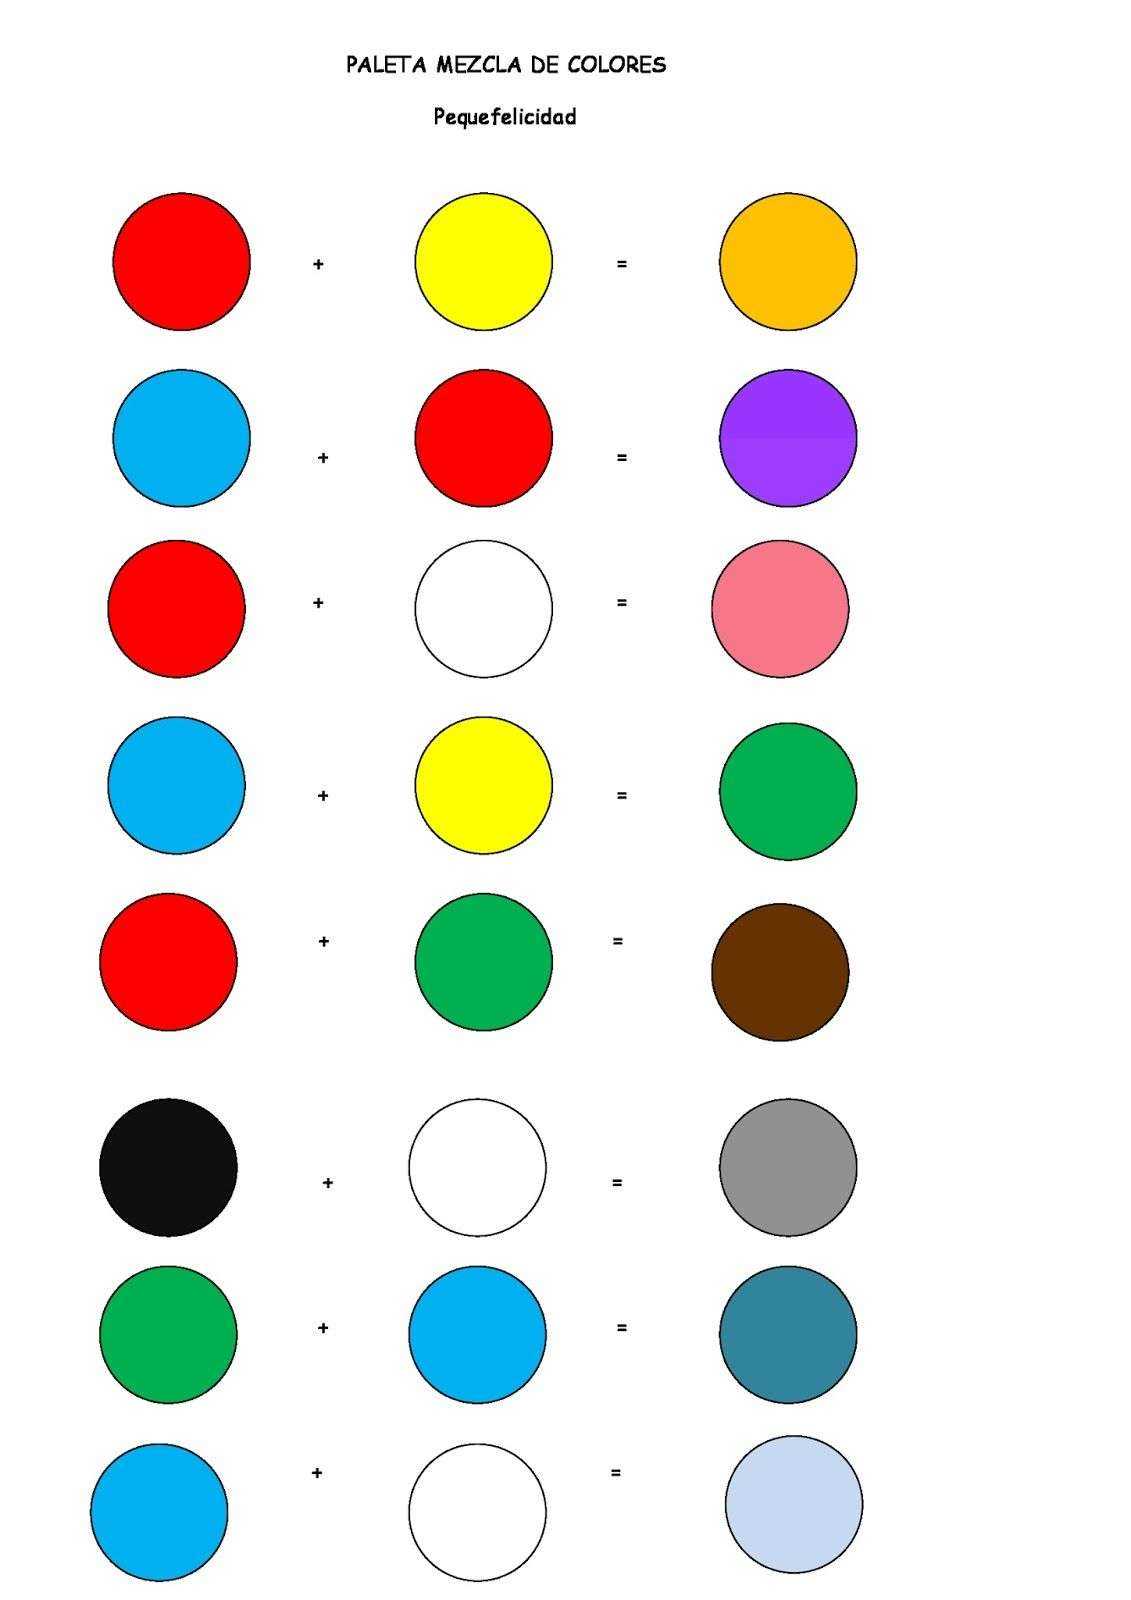 Смешивание цветов для получения нужного цвета + таблица